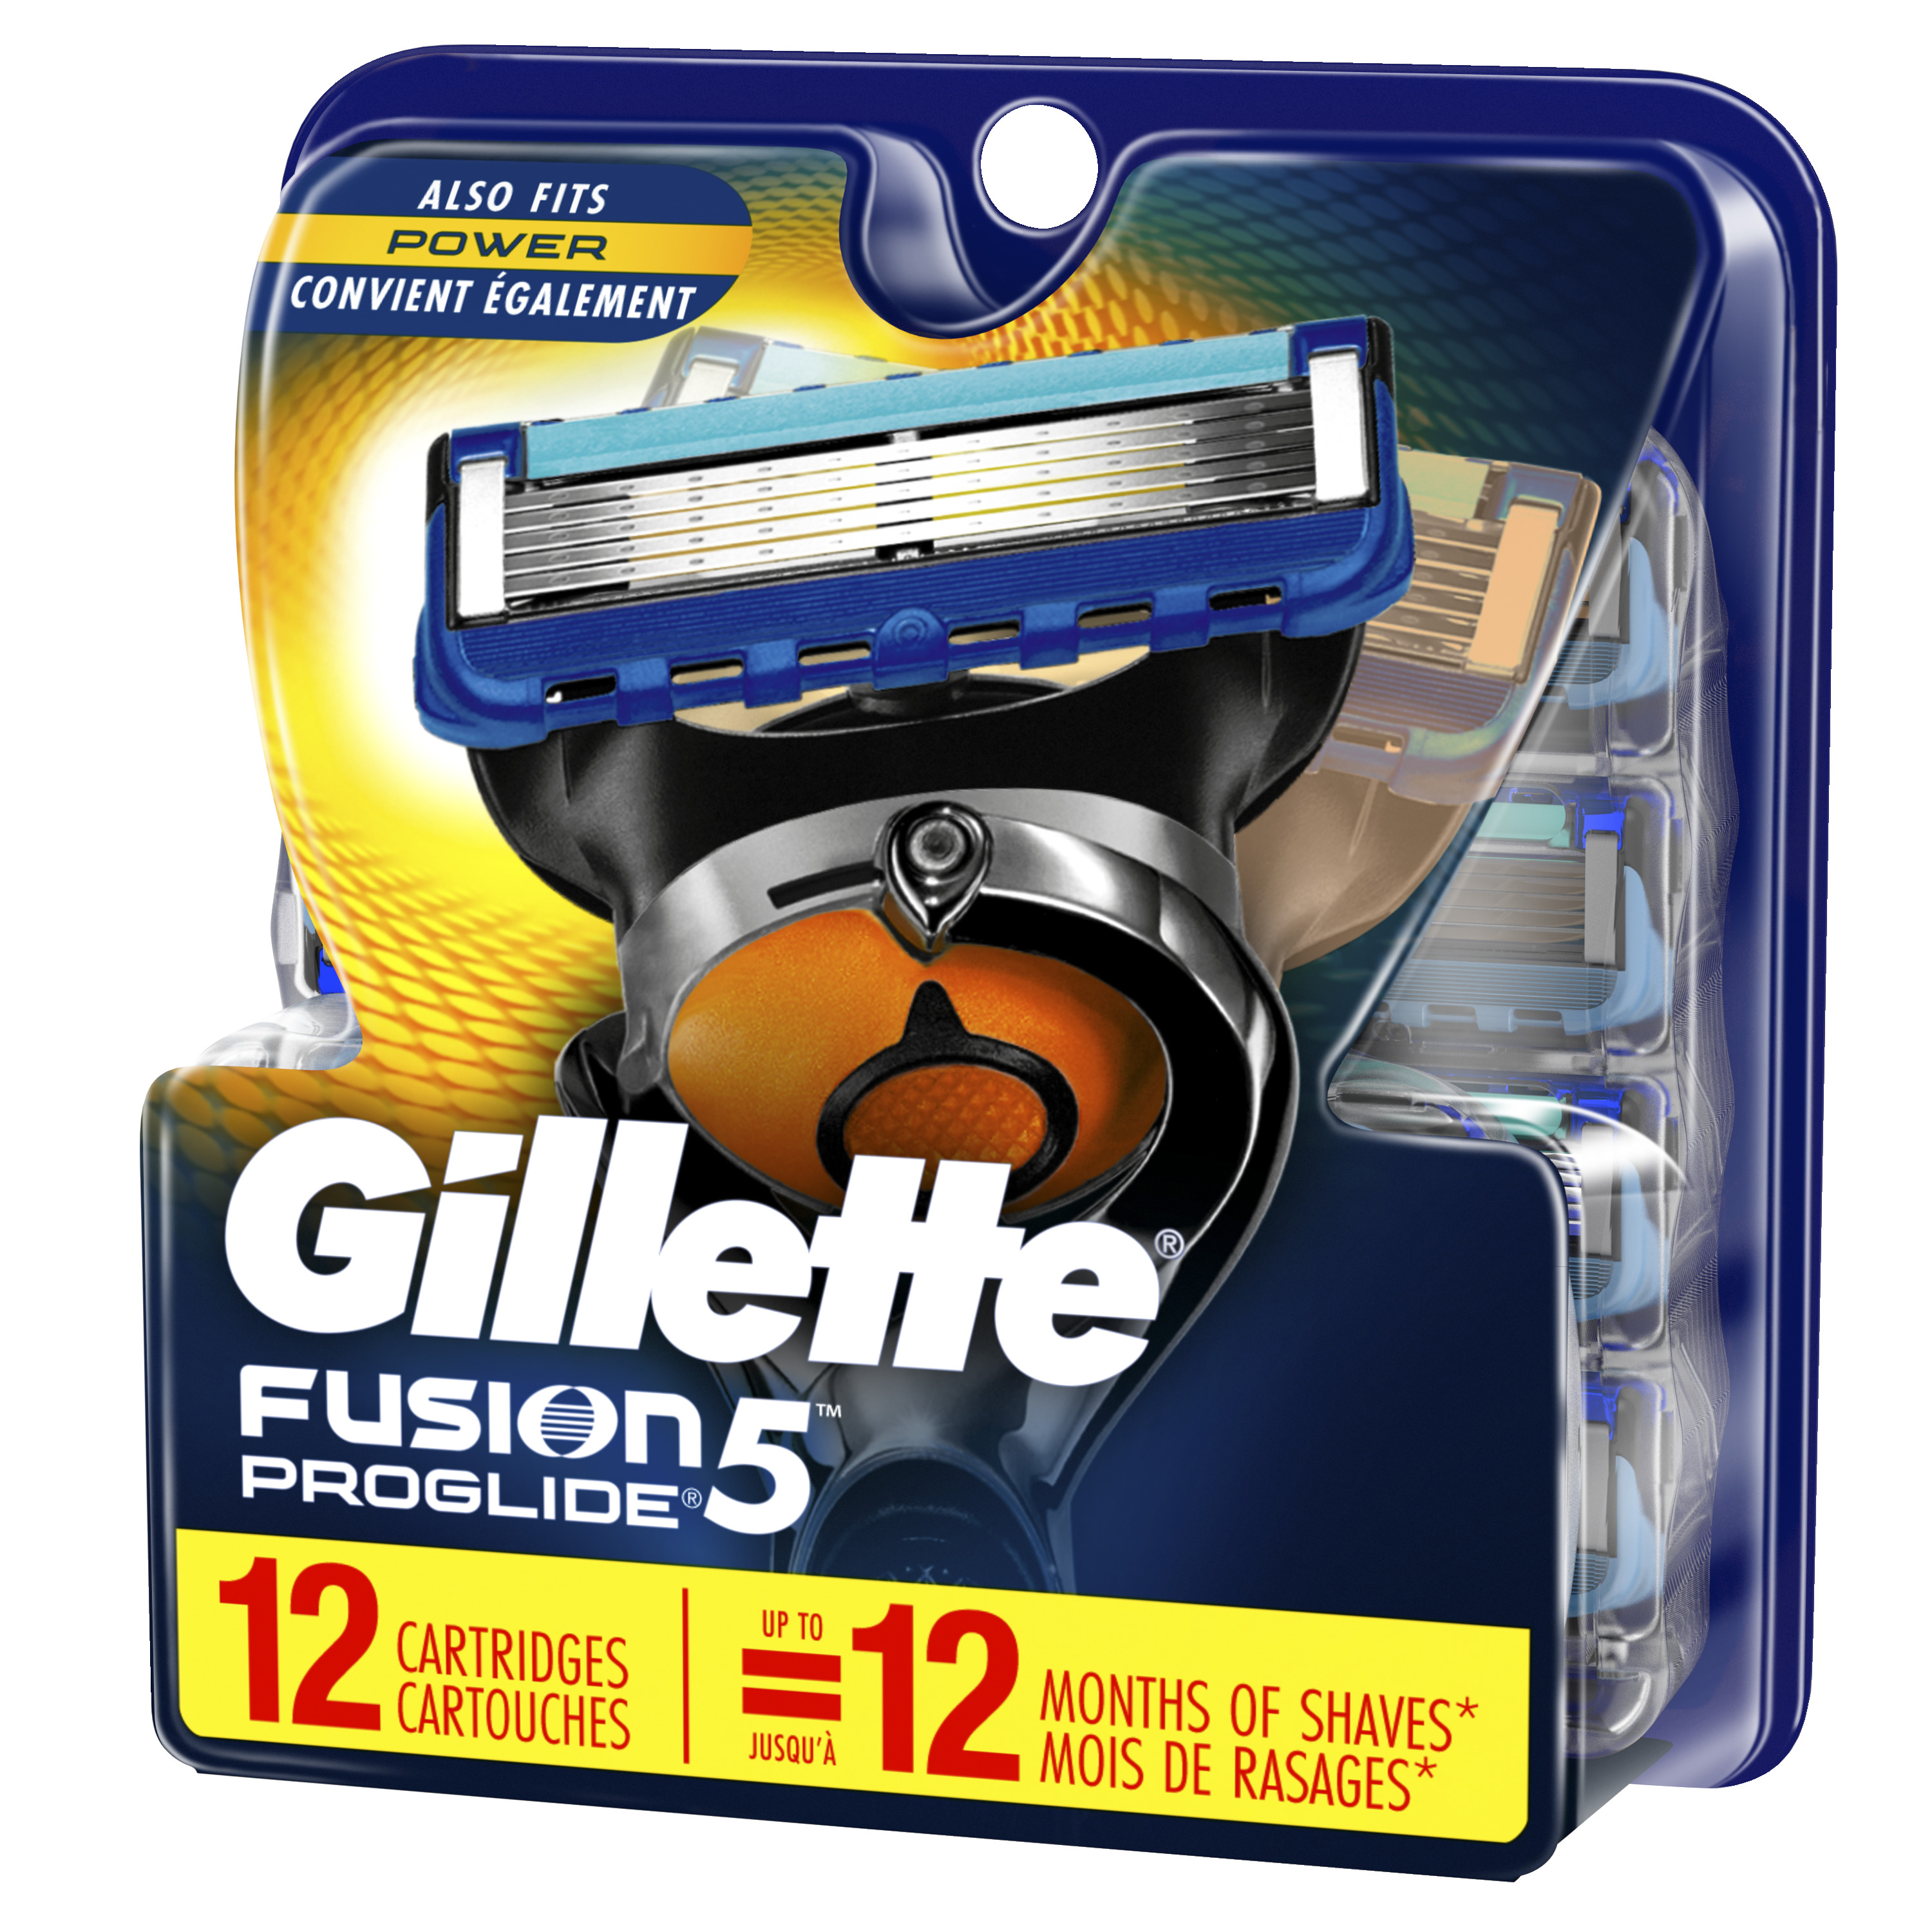 Gillette Fusion5 ProGlide Men's Razor Blades 12 Refills - image 4 of 9